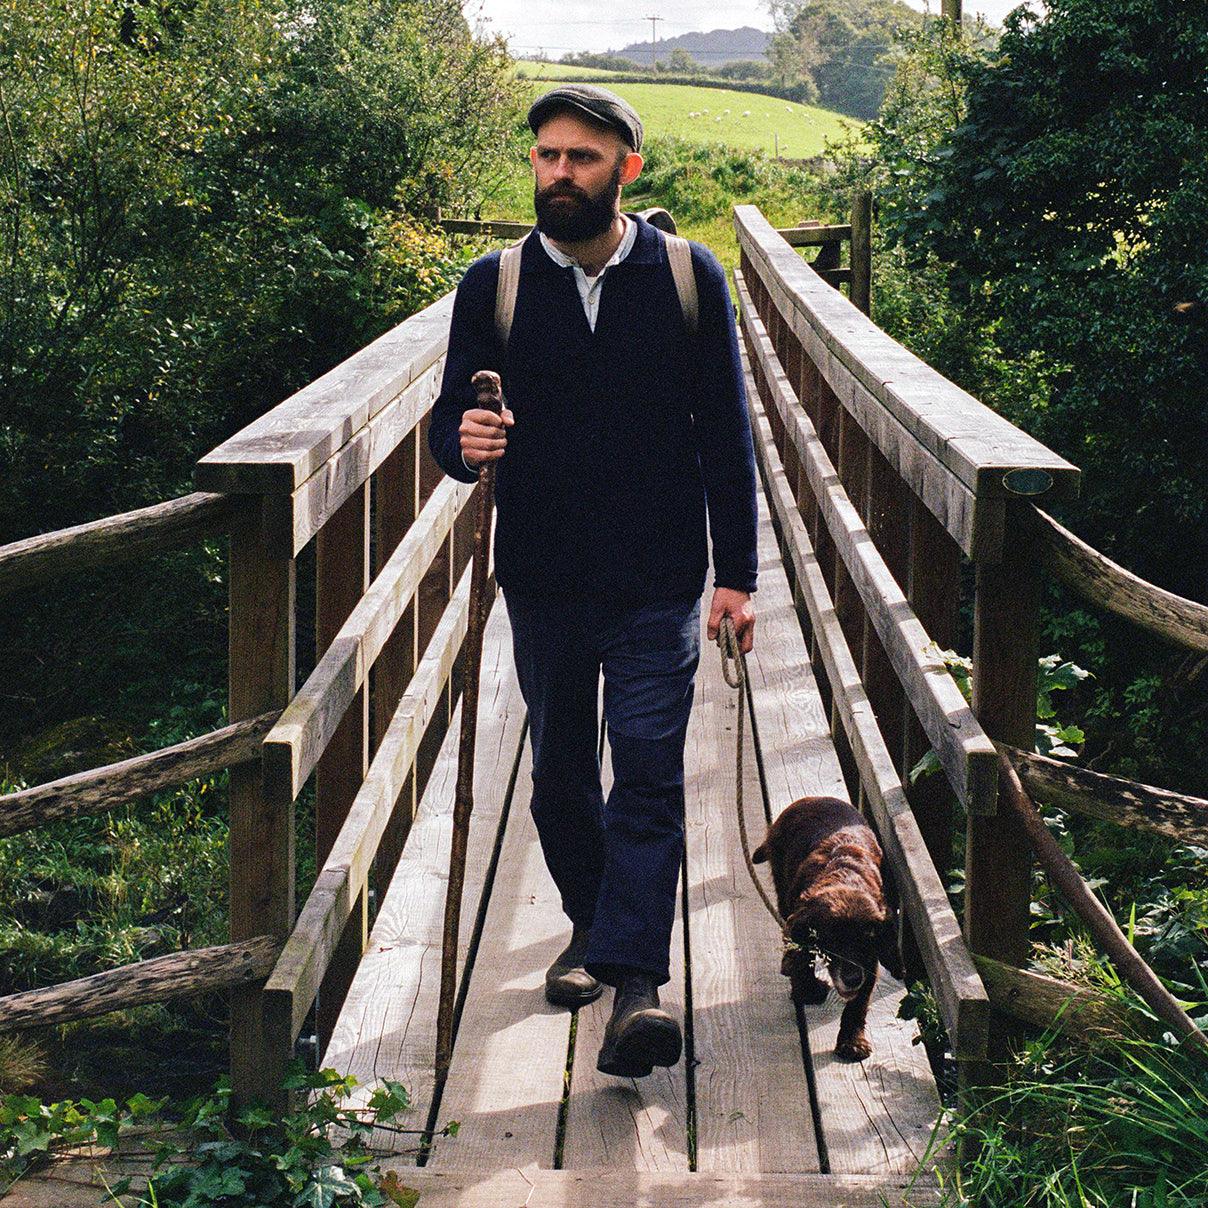 Un compagnon de labeur revêtu d'une veste de travail bleue en laine et d'un pantalon de travail assorti de la marque Champ de Manœuvres, se promenant à travers les comtés anglais avec son fidèle compagnon canin.